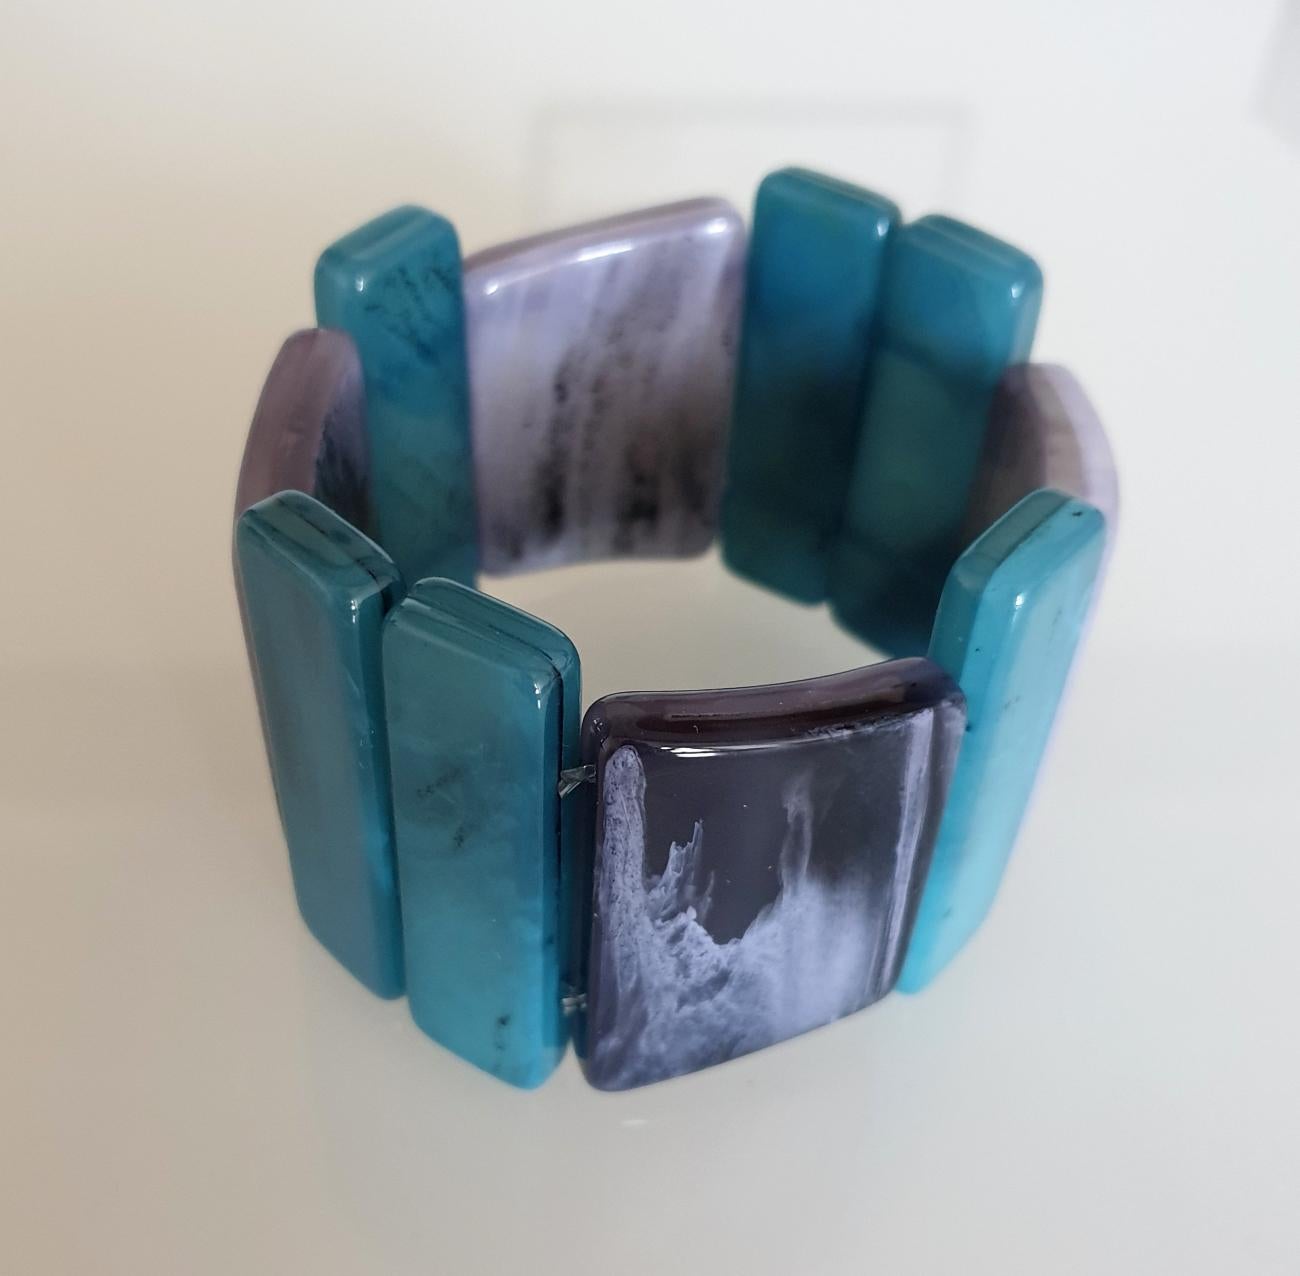 Bakelit-Armband aus der Mitte des Jahrhunderts, Frankreich, ca. 1970er Jahre.
Einige schwarze Adern auf dem Bakelit.
Die blauen Elemente sind etwas höher, und die grauen nicht gerade, 
und verleiht dem Armband eine Menge Stil.
Ausgezeichneter